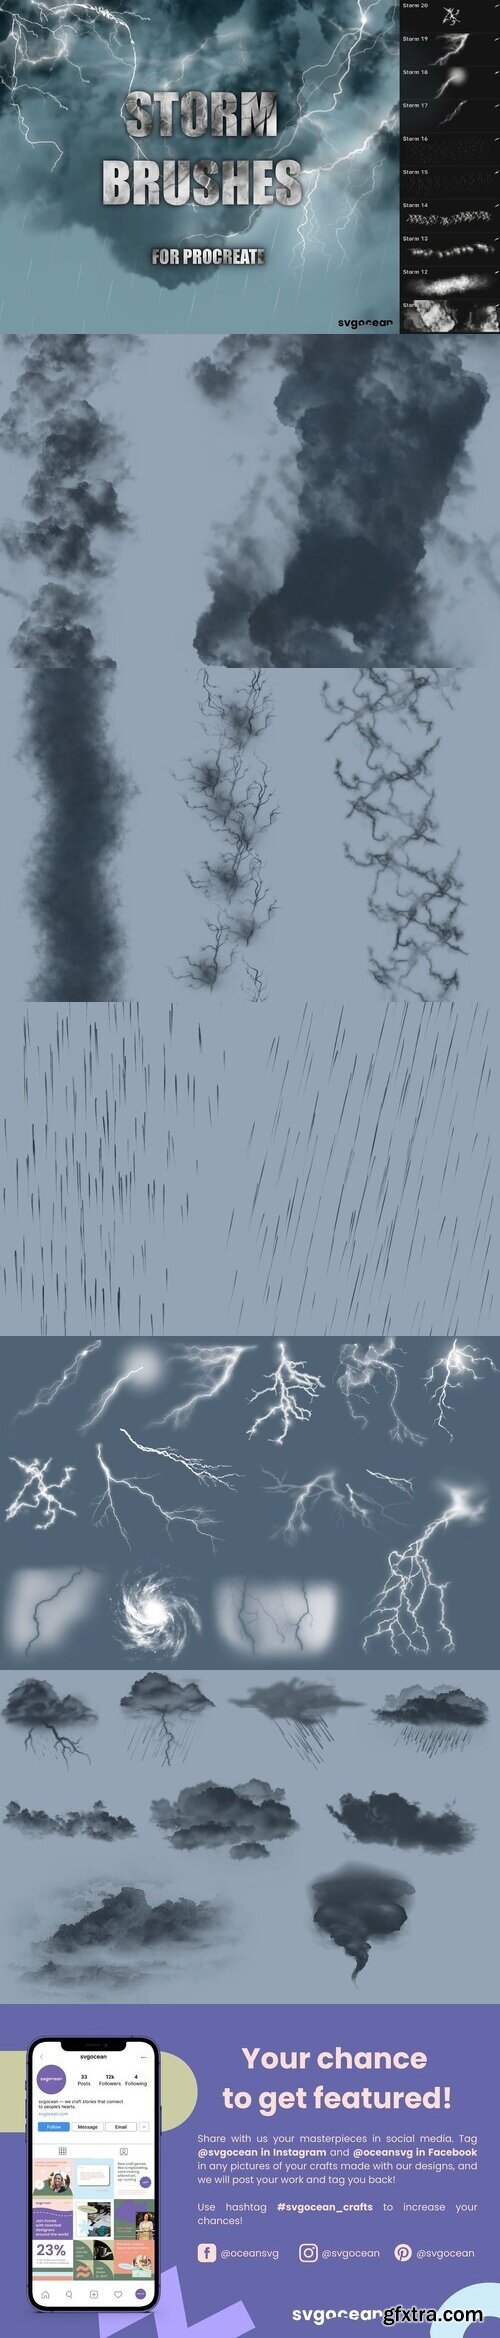 CreativeMarket - Storm and Lightning Procreate Brushes 10173824